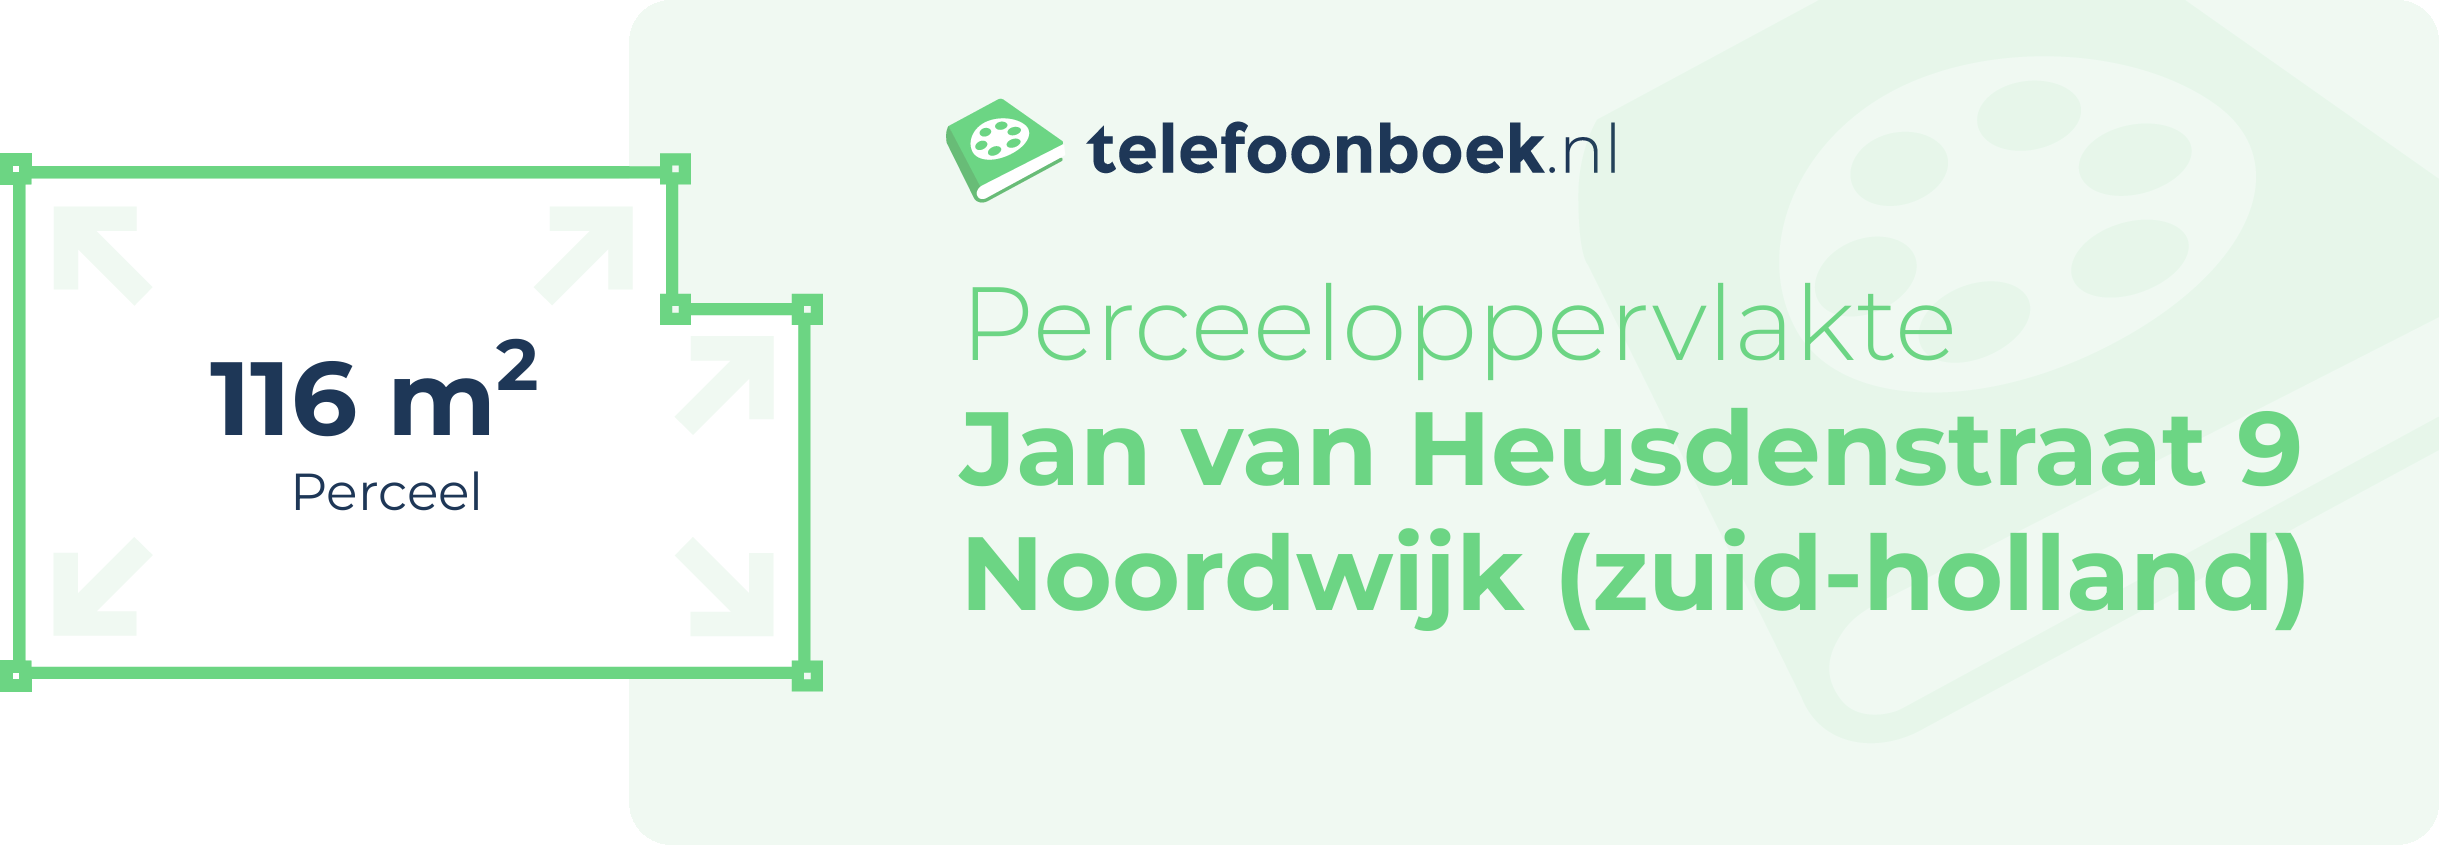 Perceeloppervlakte Jan Van Heusdenstraat 9 Noordwijk (Zuid-Holland)